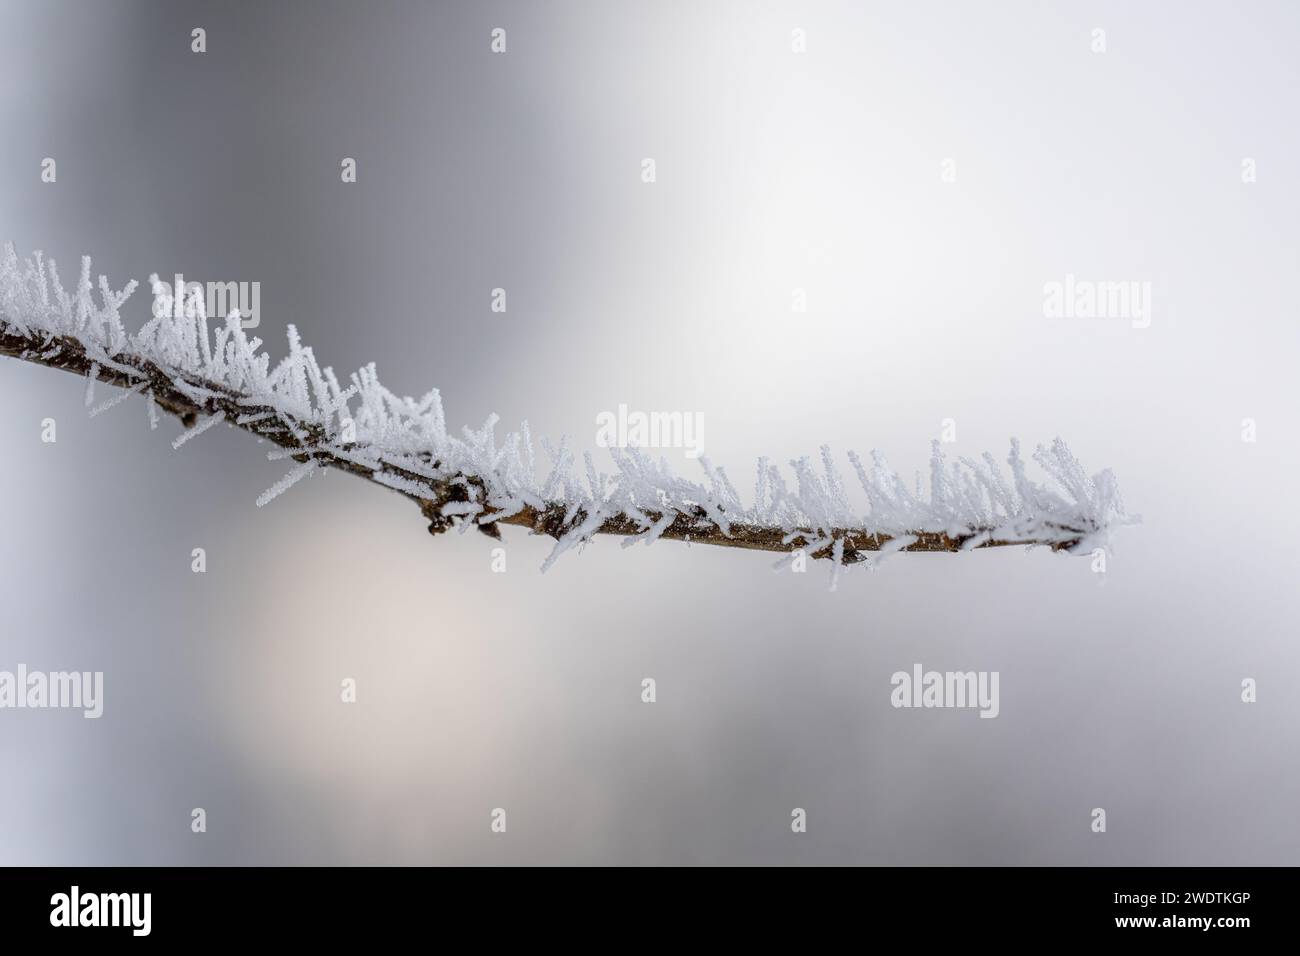 La glace de rime arrosée couvre une branche sur le fond léger doux. Aiguilles à glace sur une branche. Cristaux de cerclage recouvrant une branche. Branche d'arbre cristallisée. Banque D'Images